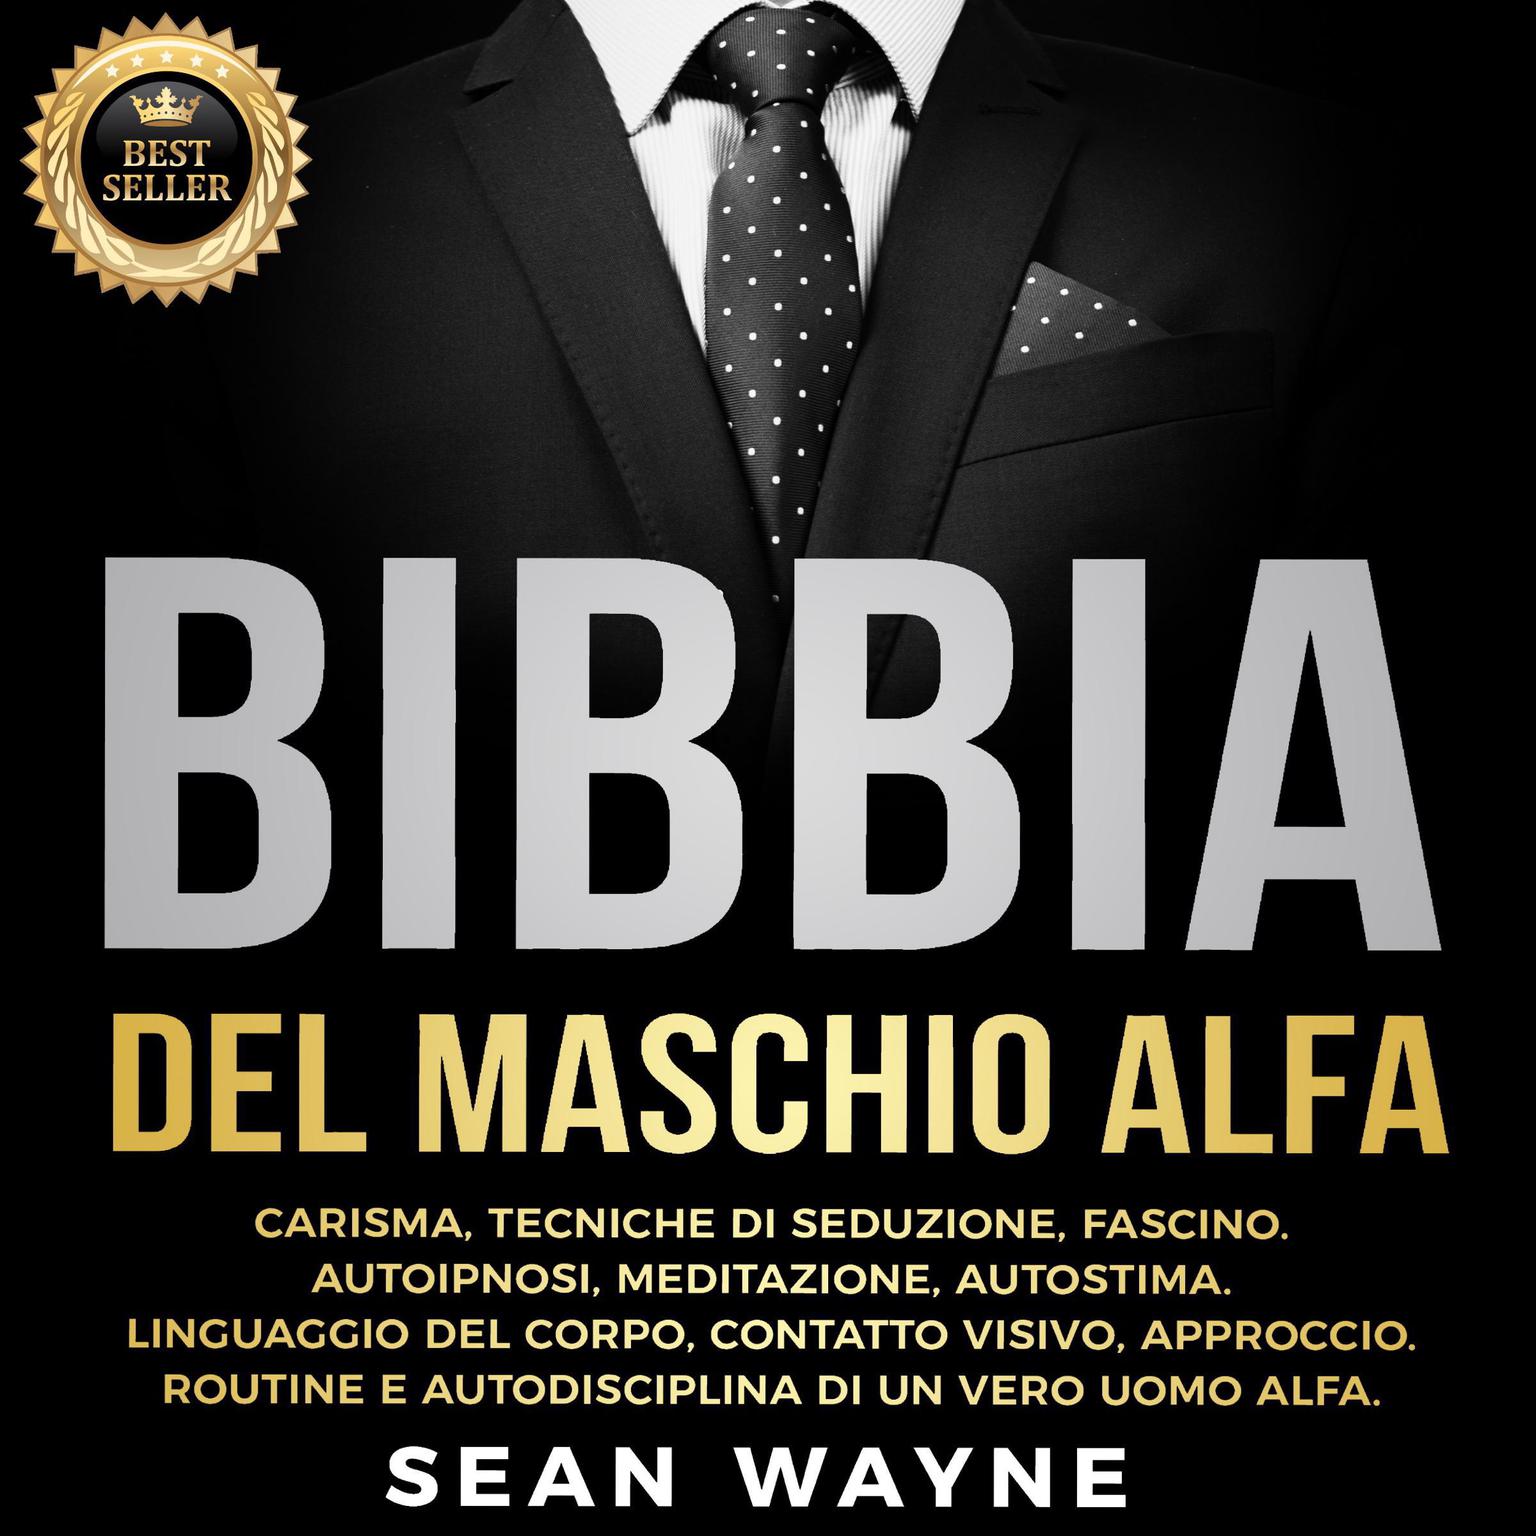 BIBBIA del MASCHIO ALFA: CARISMA, TECNICHE DI SEDUZIONE, FASCINO. AUTOIPNOSI, MEDITAZIONE, AUTOSTIMA. LINGUAGGIO DEL CORPO, CONTATTO VISIVO, APPROCCIO. ROUTINE E AUTODISCIPLINA DI UN VERO UOMO ALFA. New Version Audiobook, by Sean Wayne